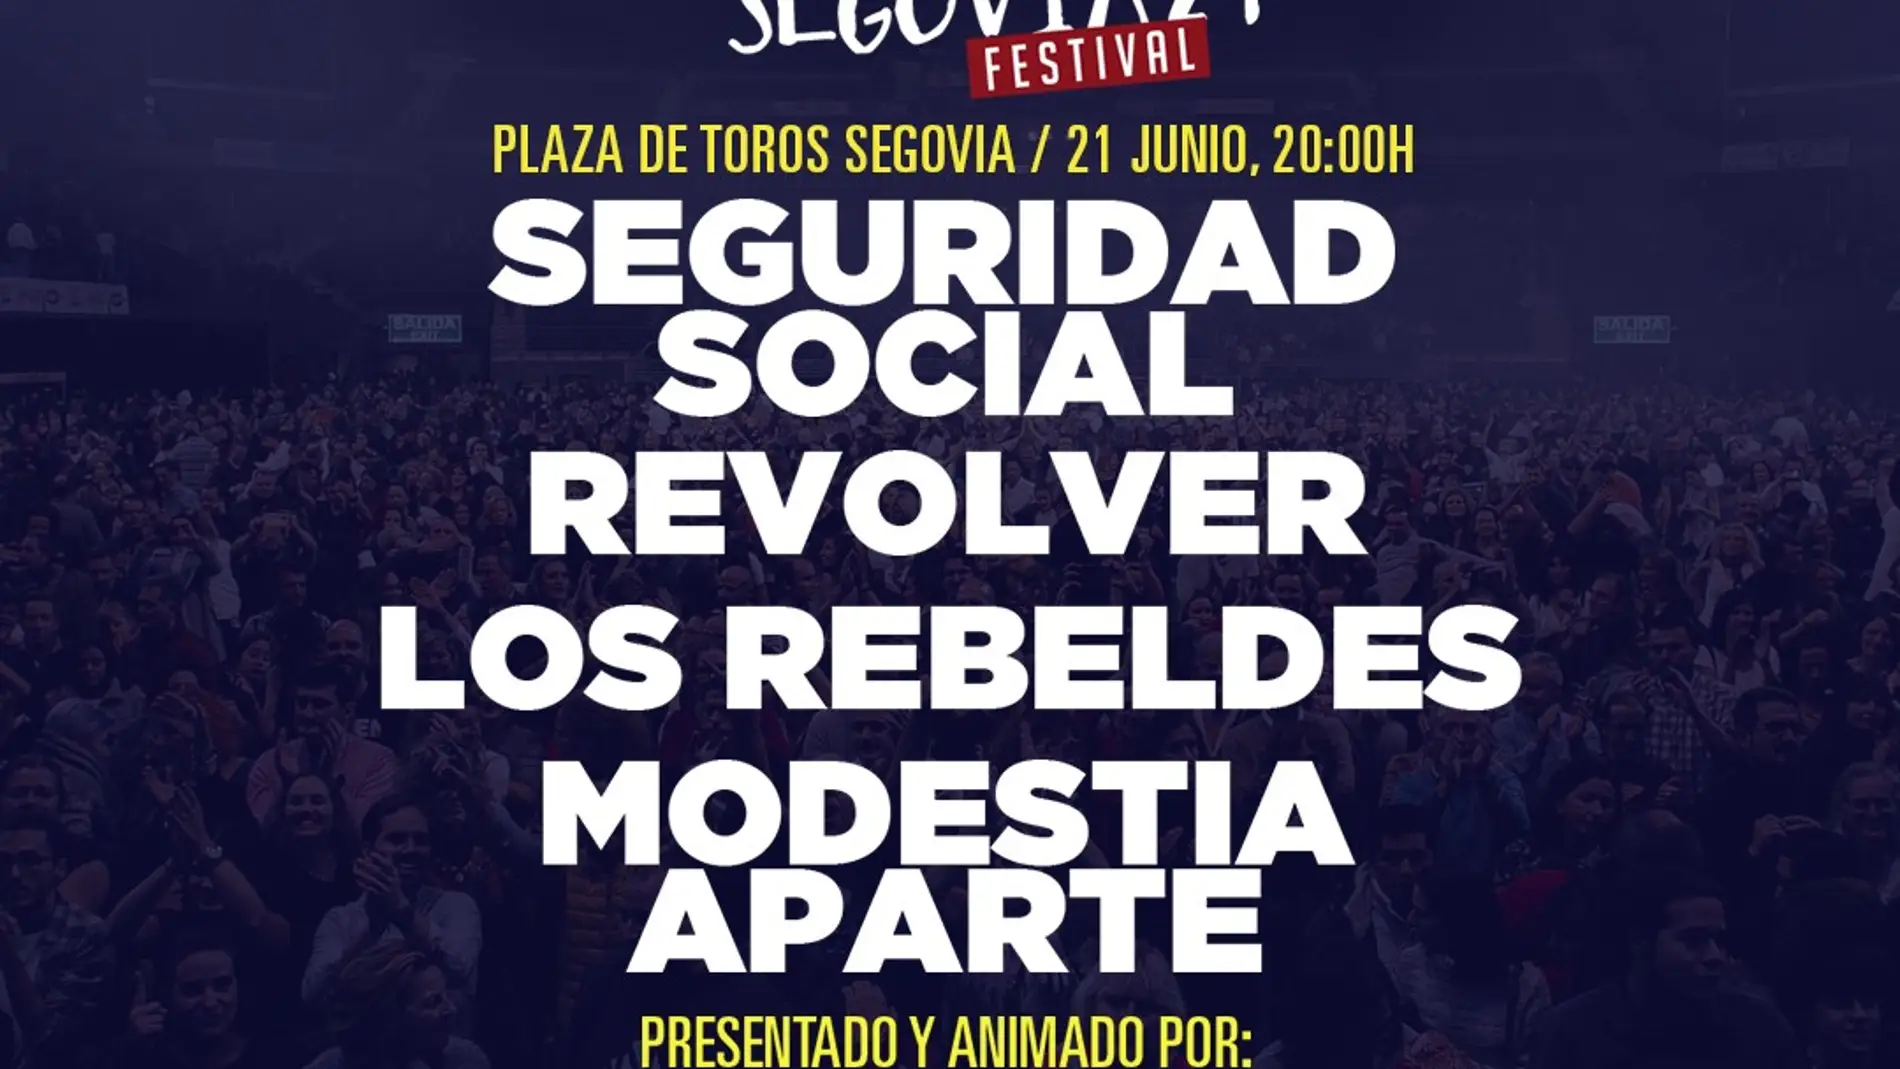 Revolver, Los Rebeldes, Seguridad Social y Modestia Aparte en las fiestas de Segovia